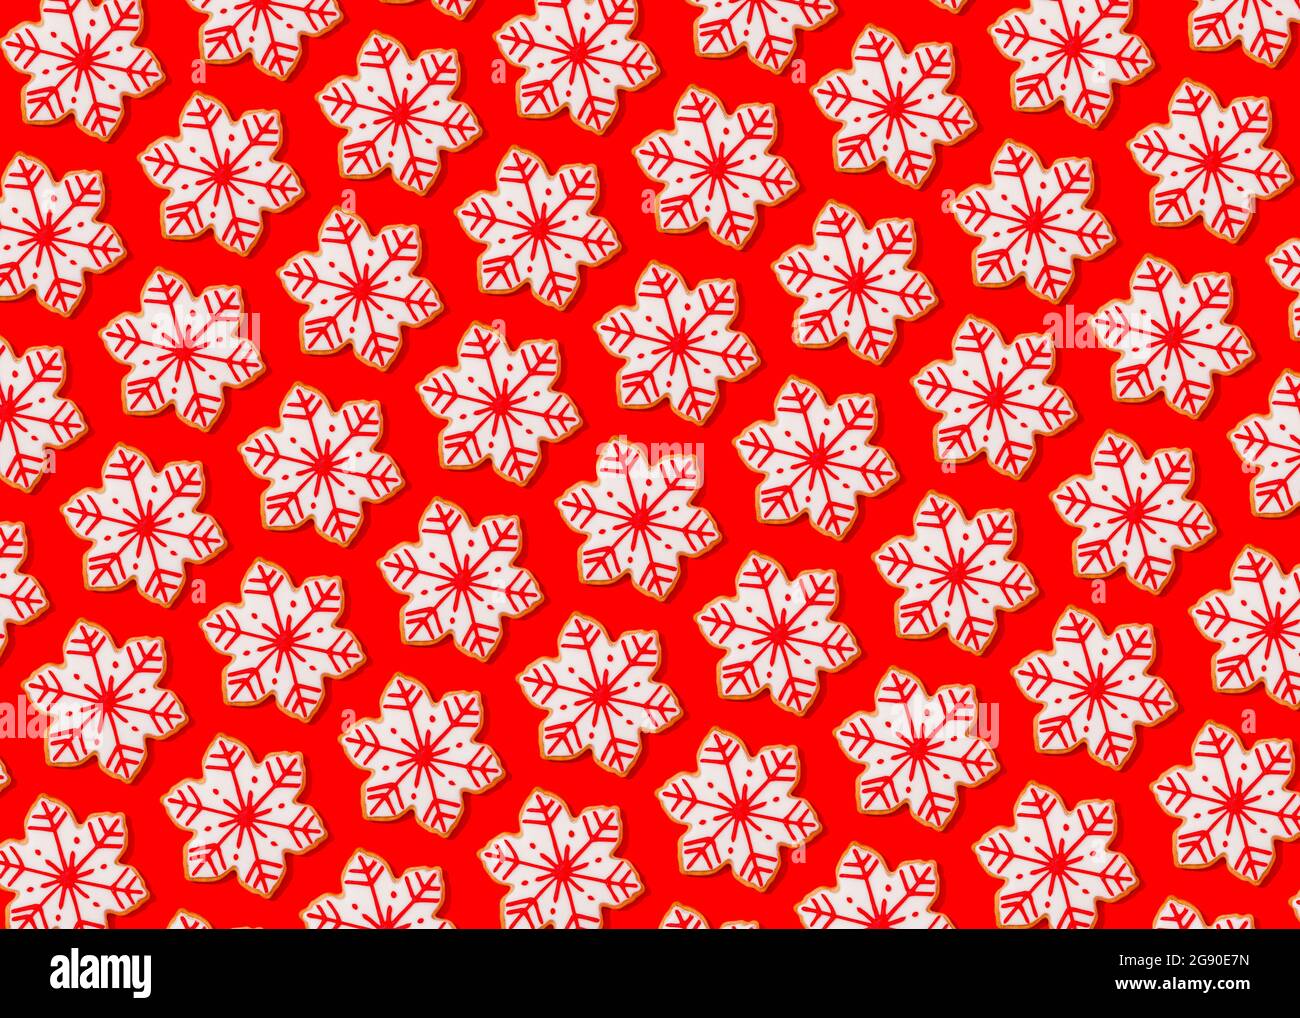 Motif de biscuits de Noël en forme de flocons de neige posé à plat sur fond rouge vif Banque D'Images